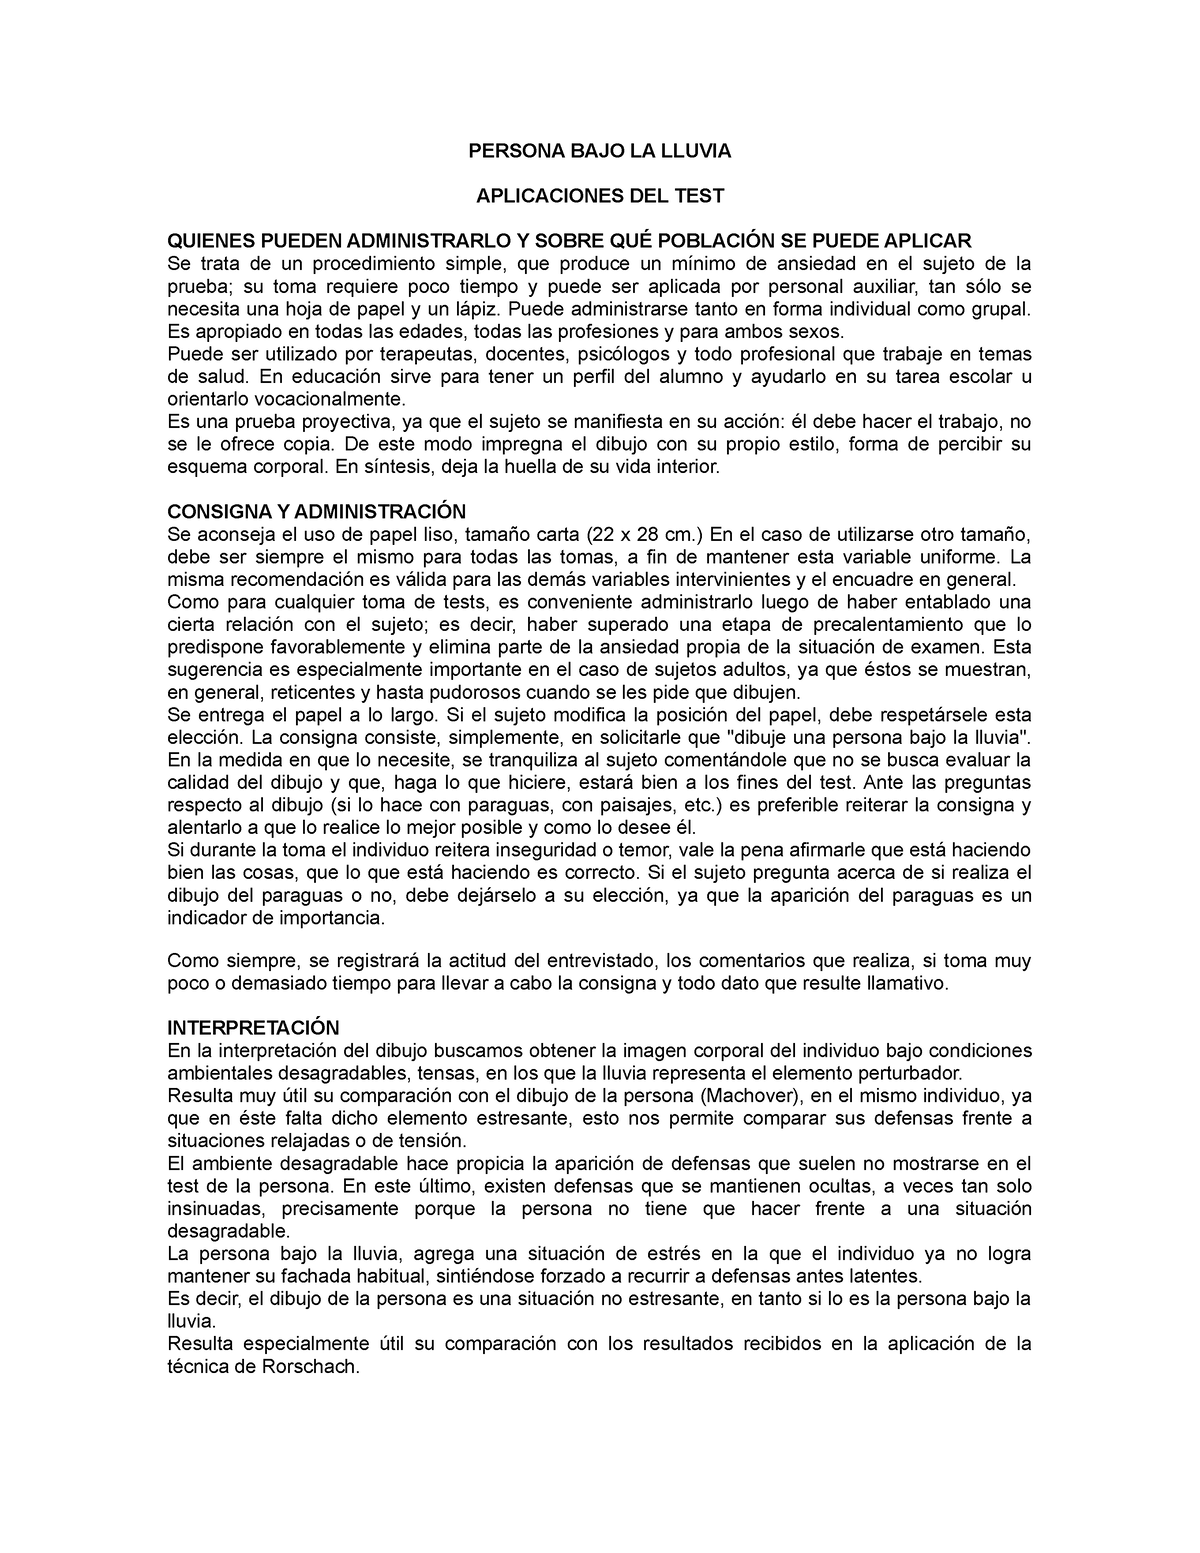 Manual del Test de la Persona Bajo La LLuvia - PERSONA BAJO LA LLUVIA  APLICACIONES DEL TEST QUIENES - Studocu